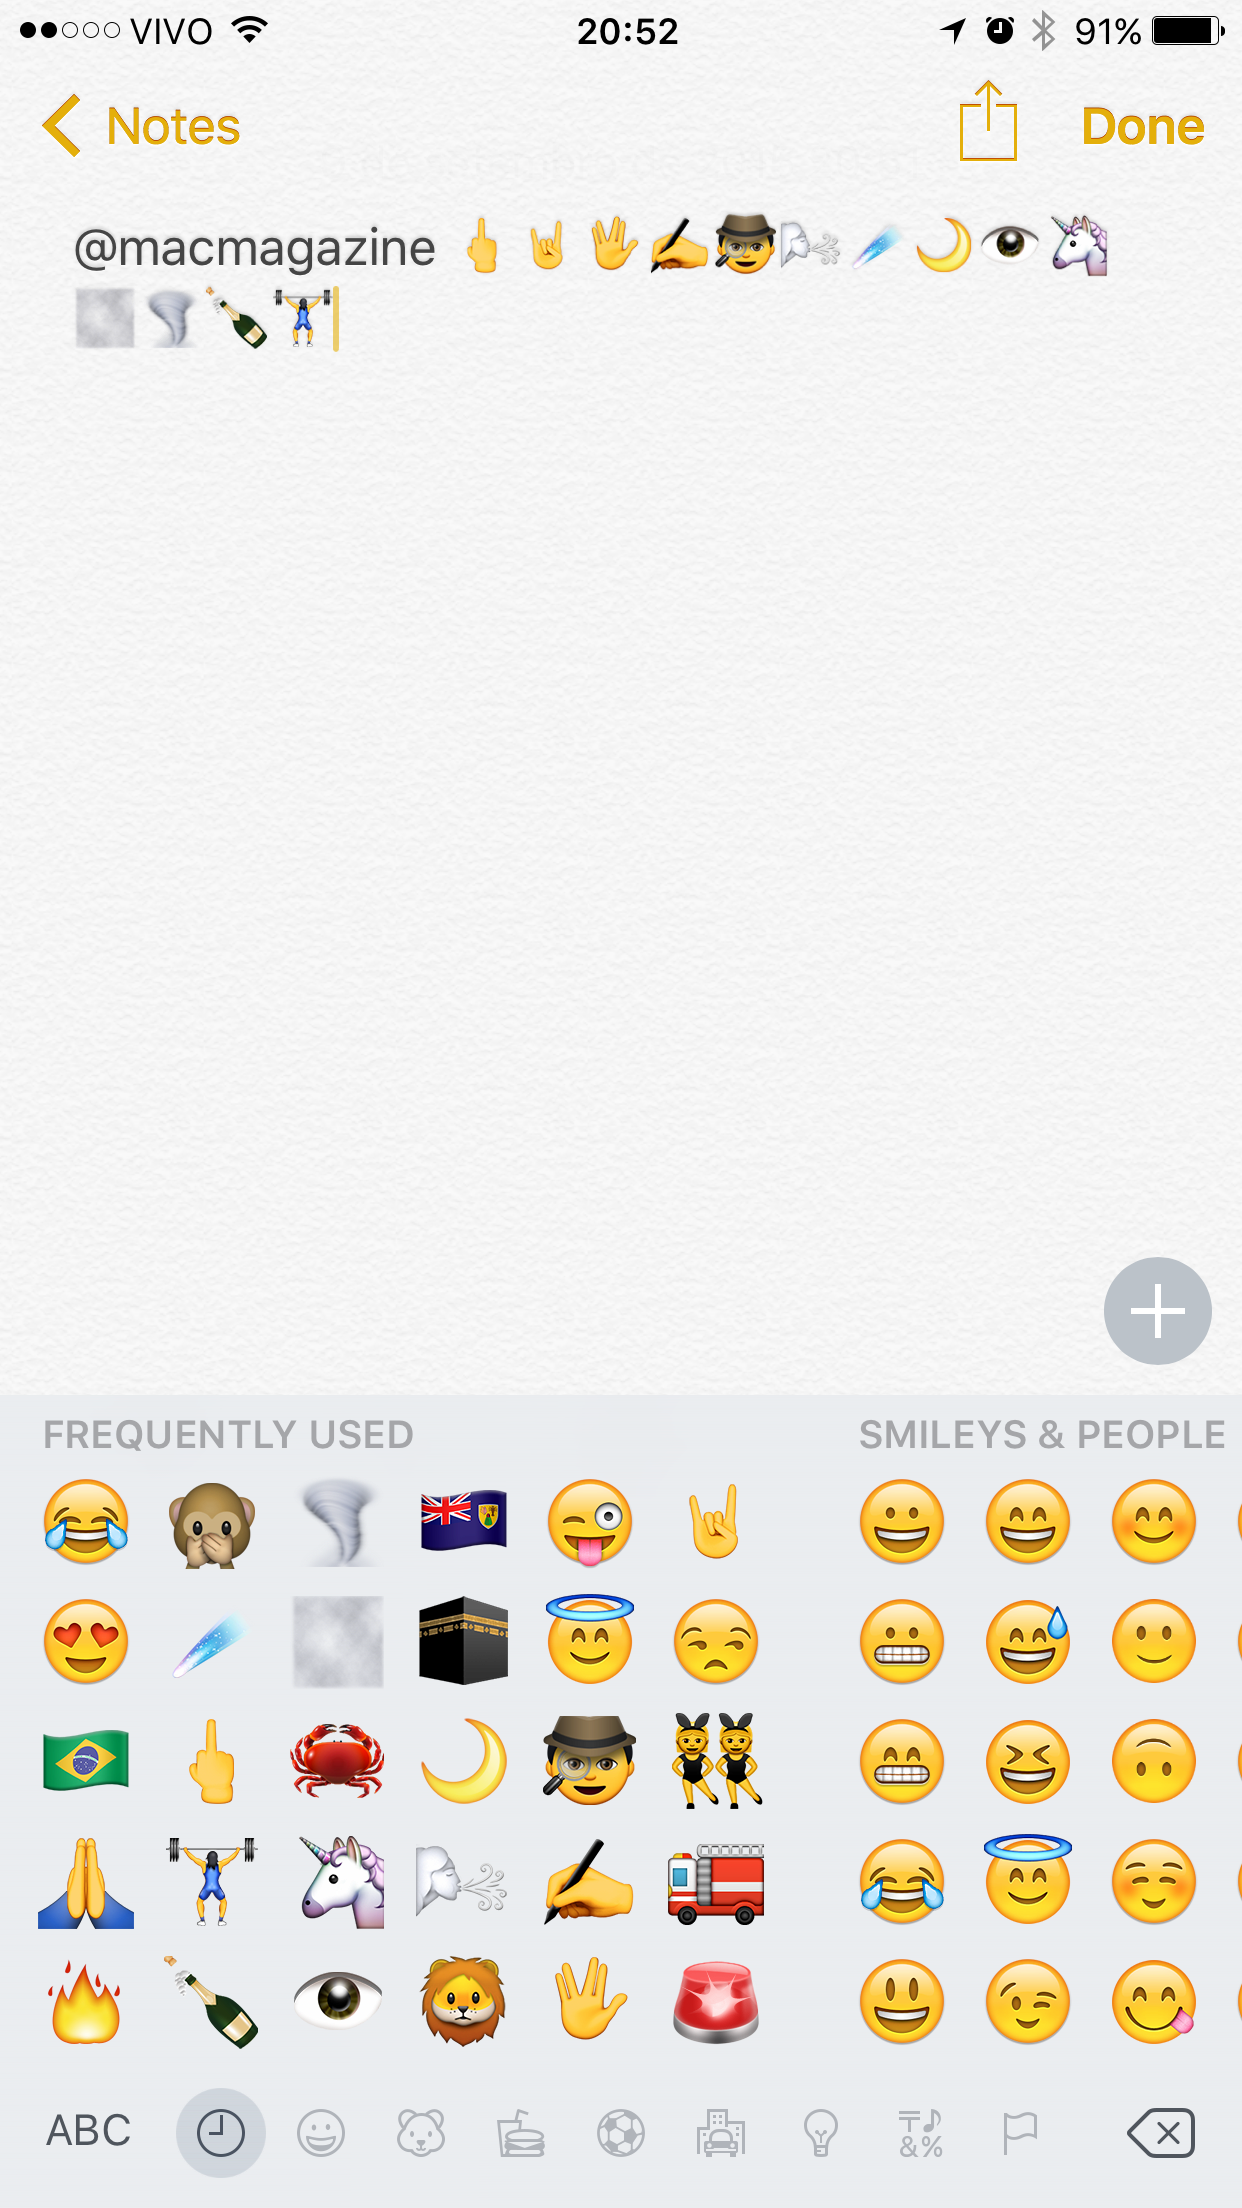 Novos Emojis no iOS 9.1